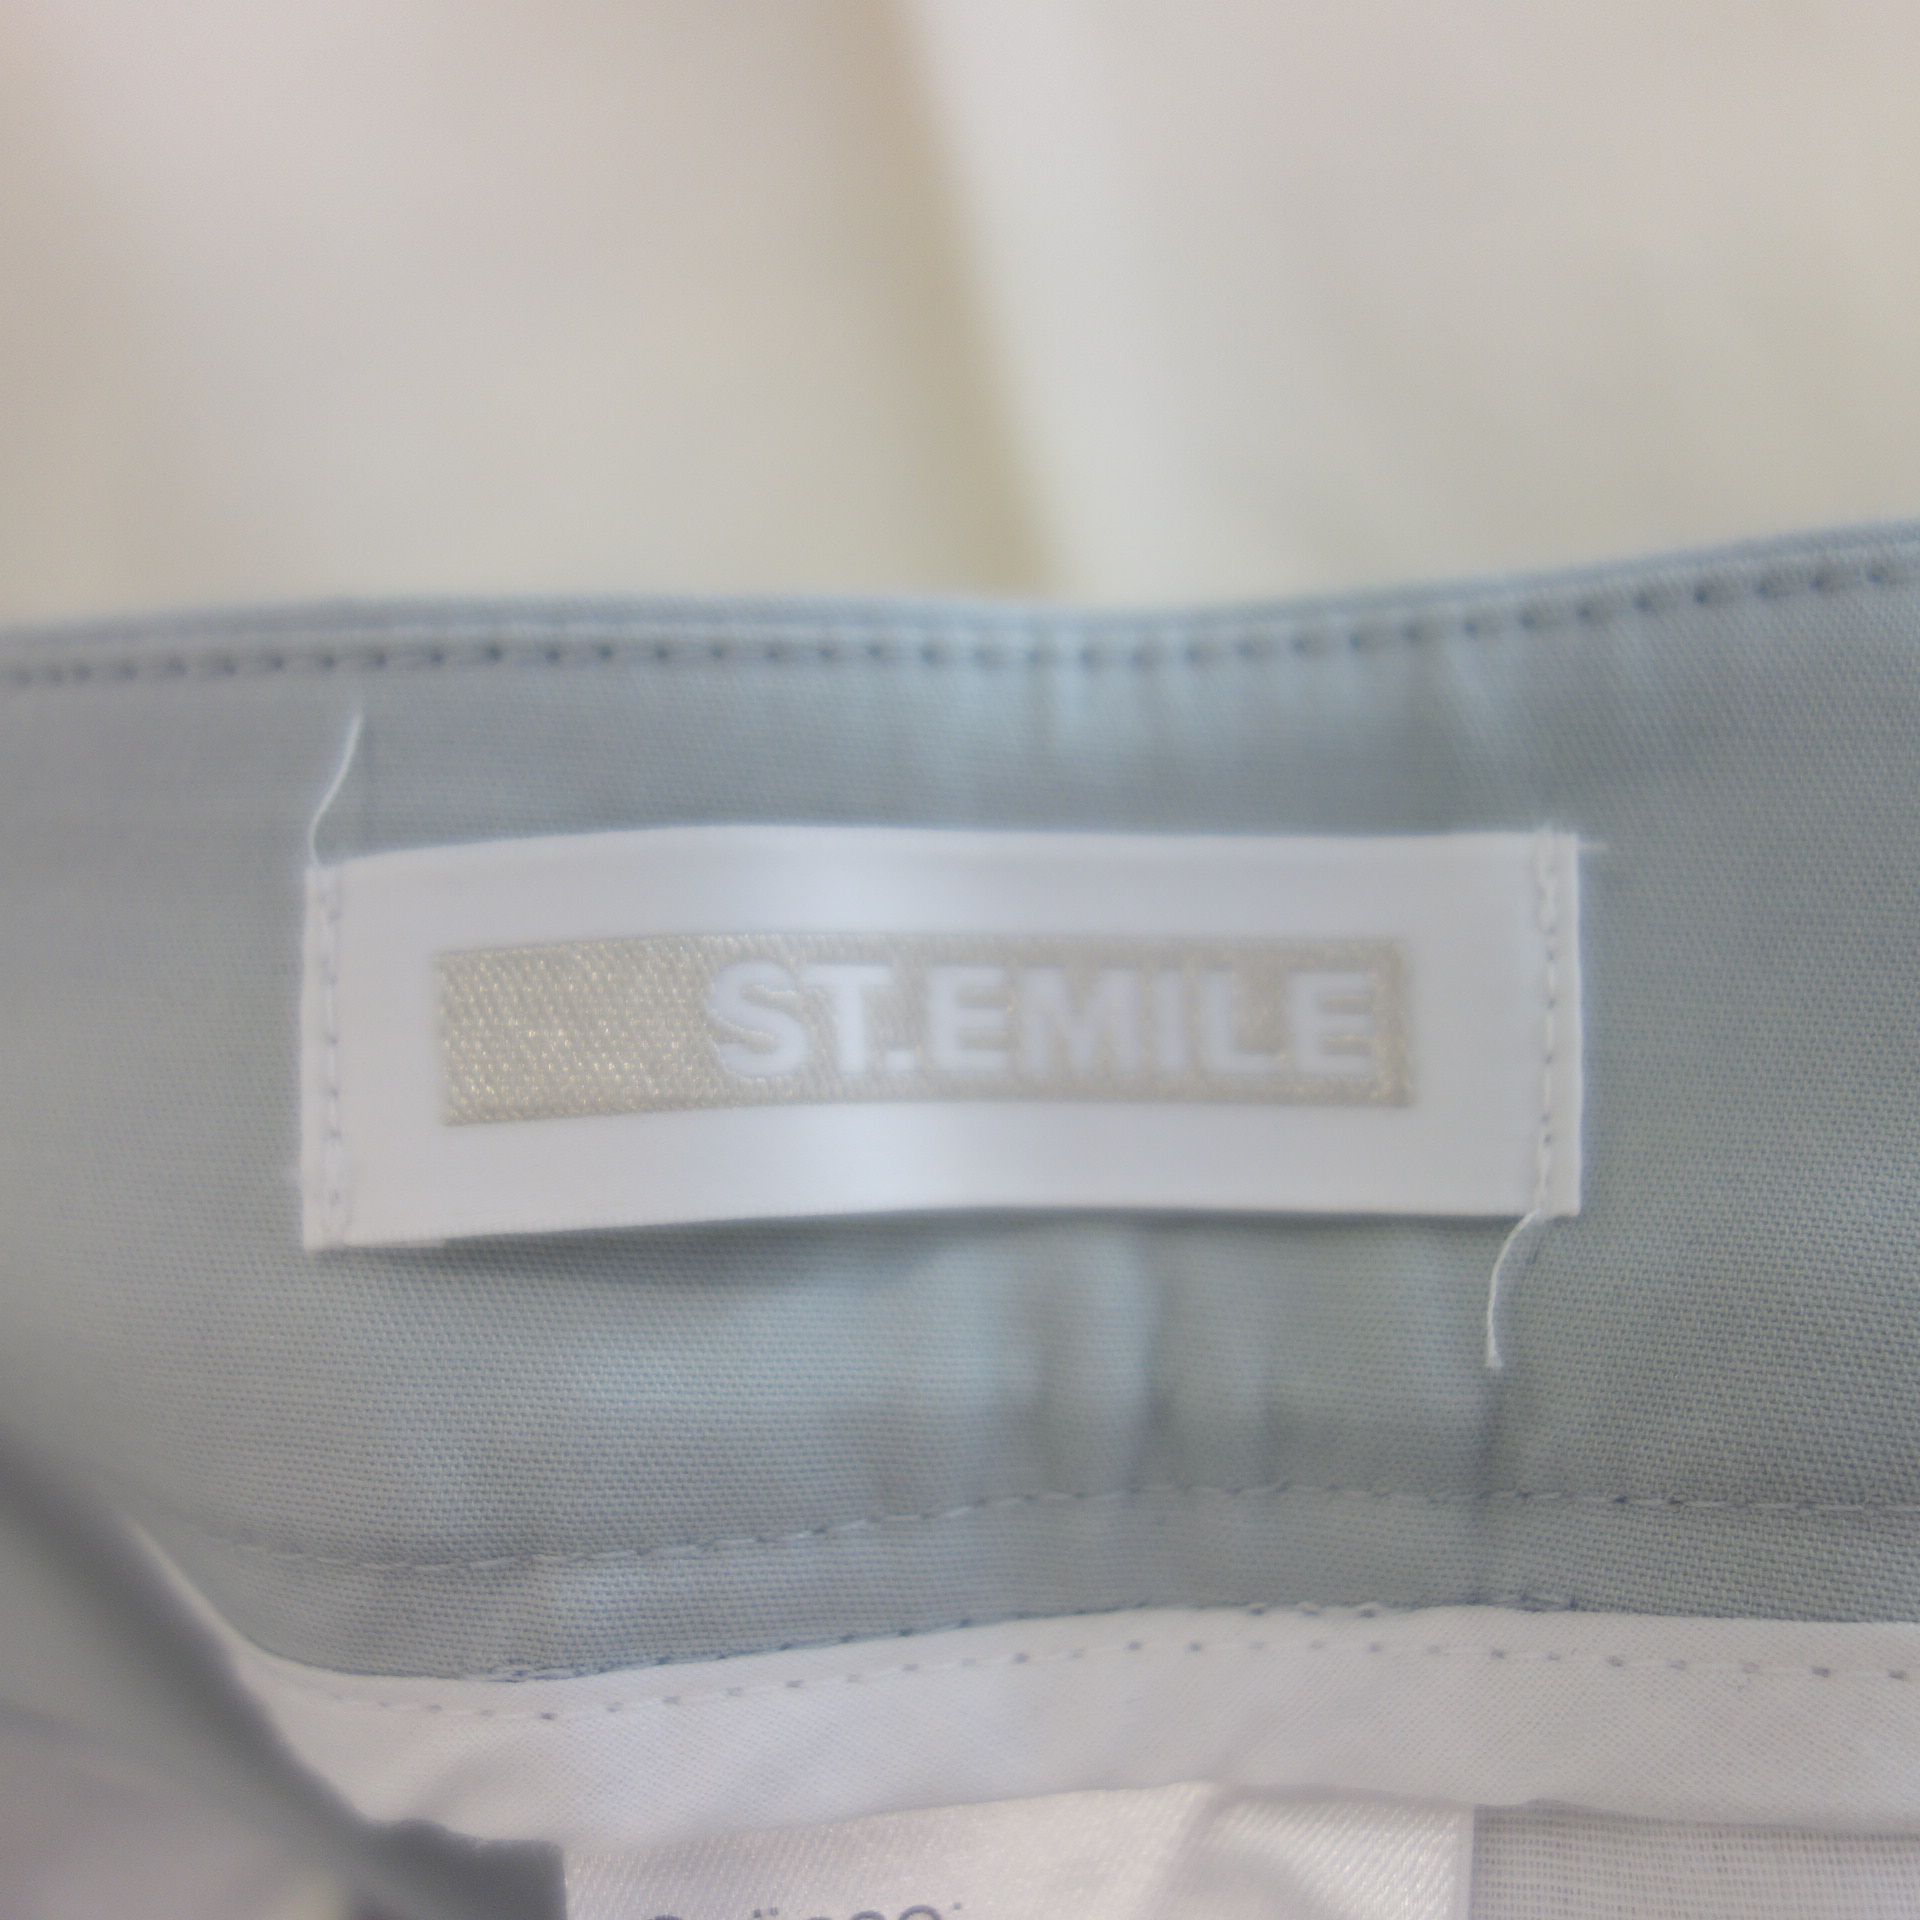 ST EMILE Damen Hosen Stoffhose Modell Ennio Blau Grau Straight Zierstreifen